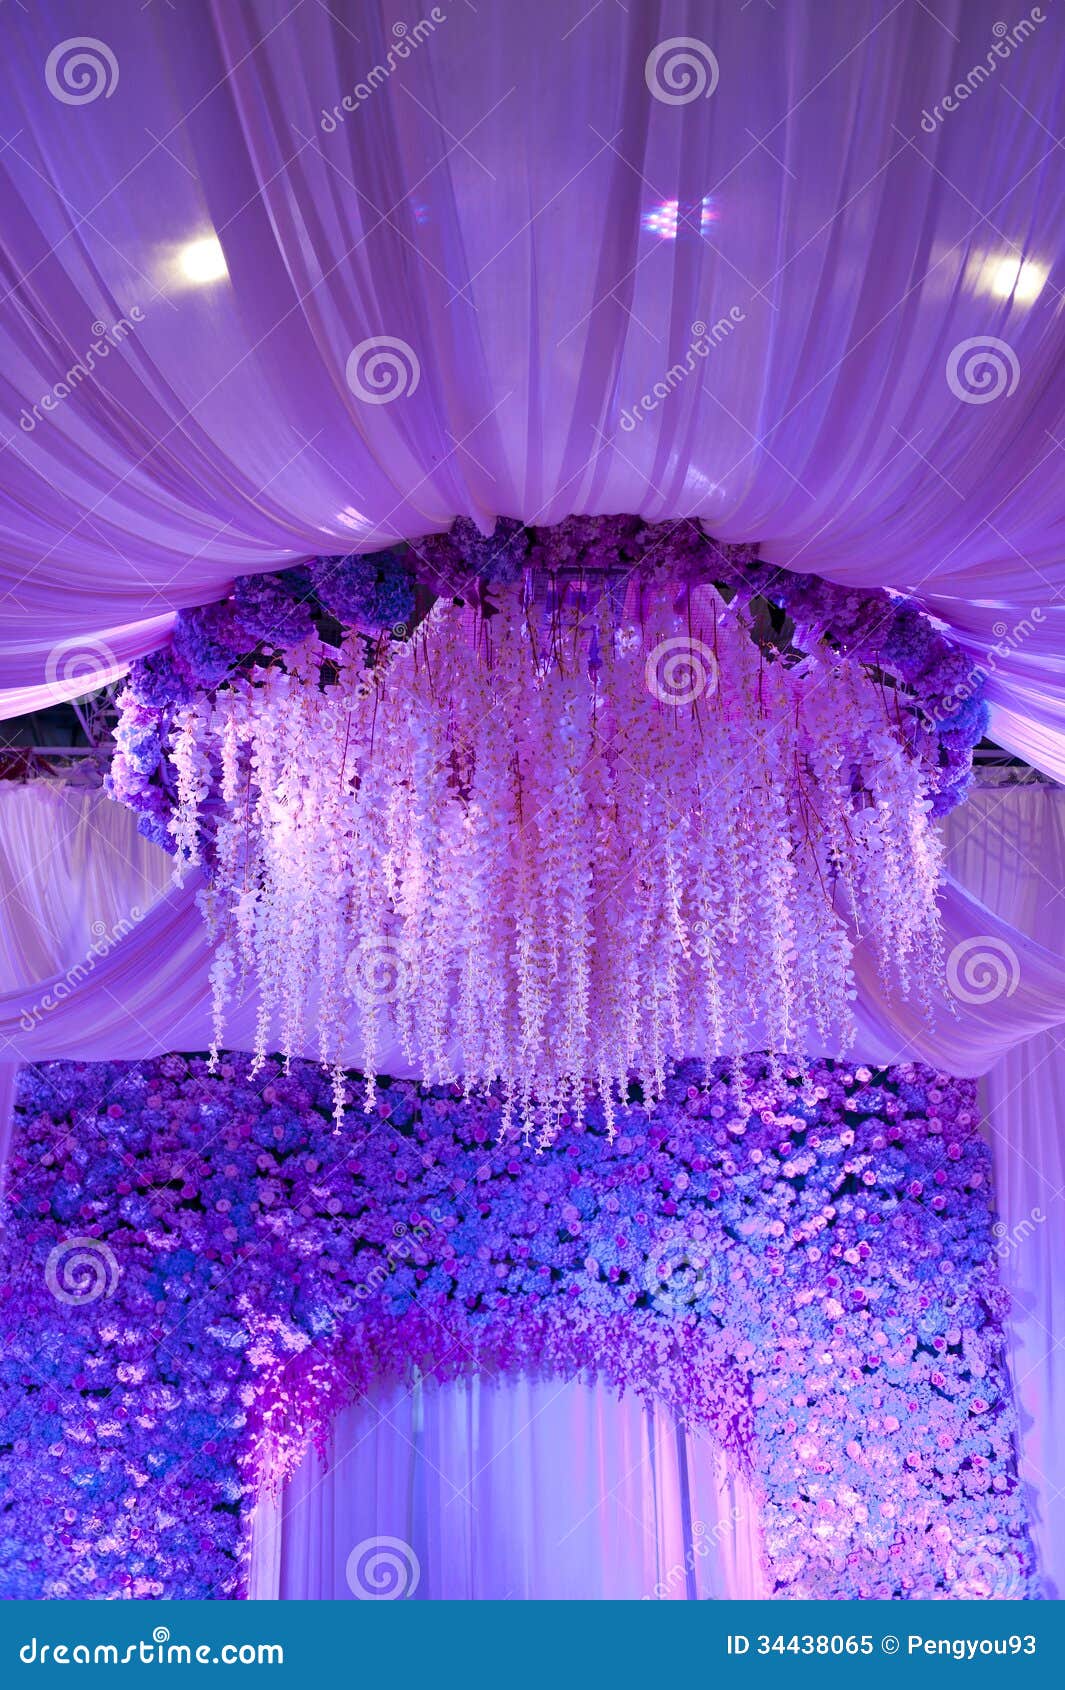 Hoa cưới trang trí nền sân khấu sẽ mang đến cho không gian lễ cưới của bạn vẻ đẹp đầy màu sắc và sống động. Chọn những bông hoa phù hợp với chủ đề và phong cách lễ cưới của bạn, một món quà tinh tế dành cho người yêu của bạn.